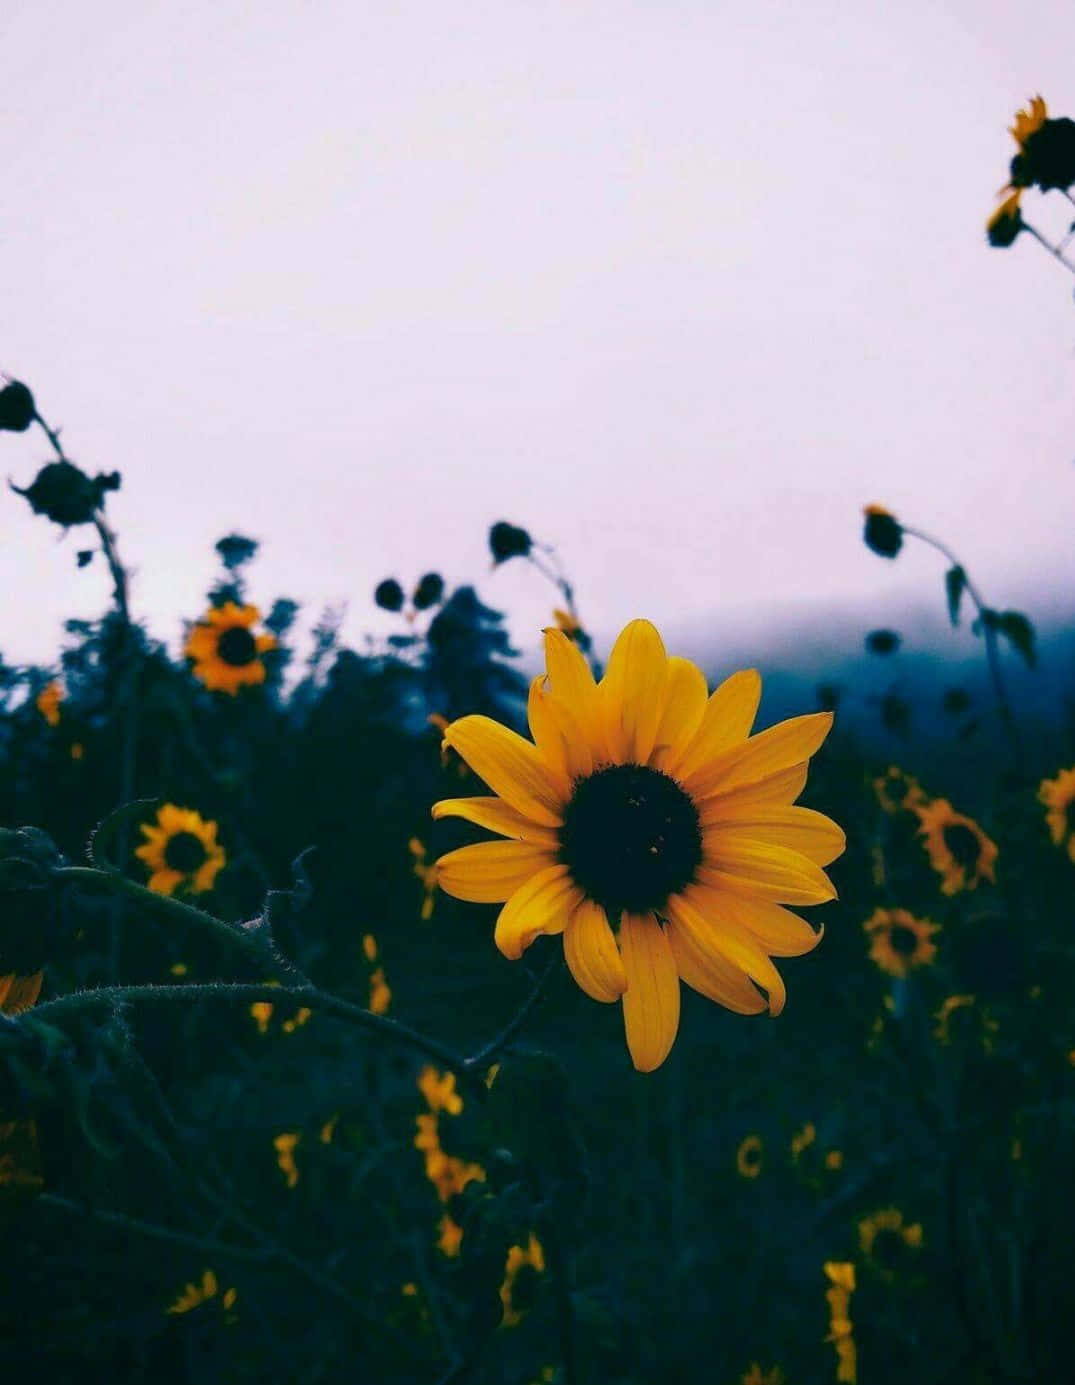 Aesthetic Sunflower Against White Background